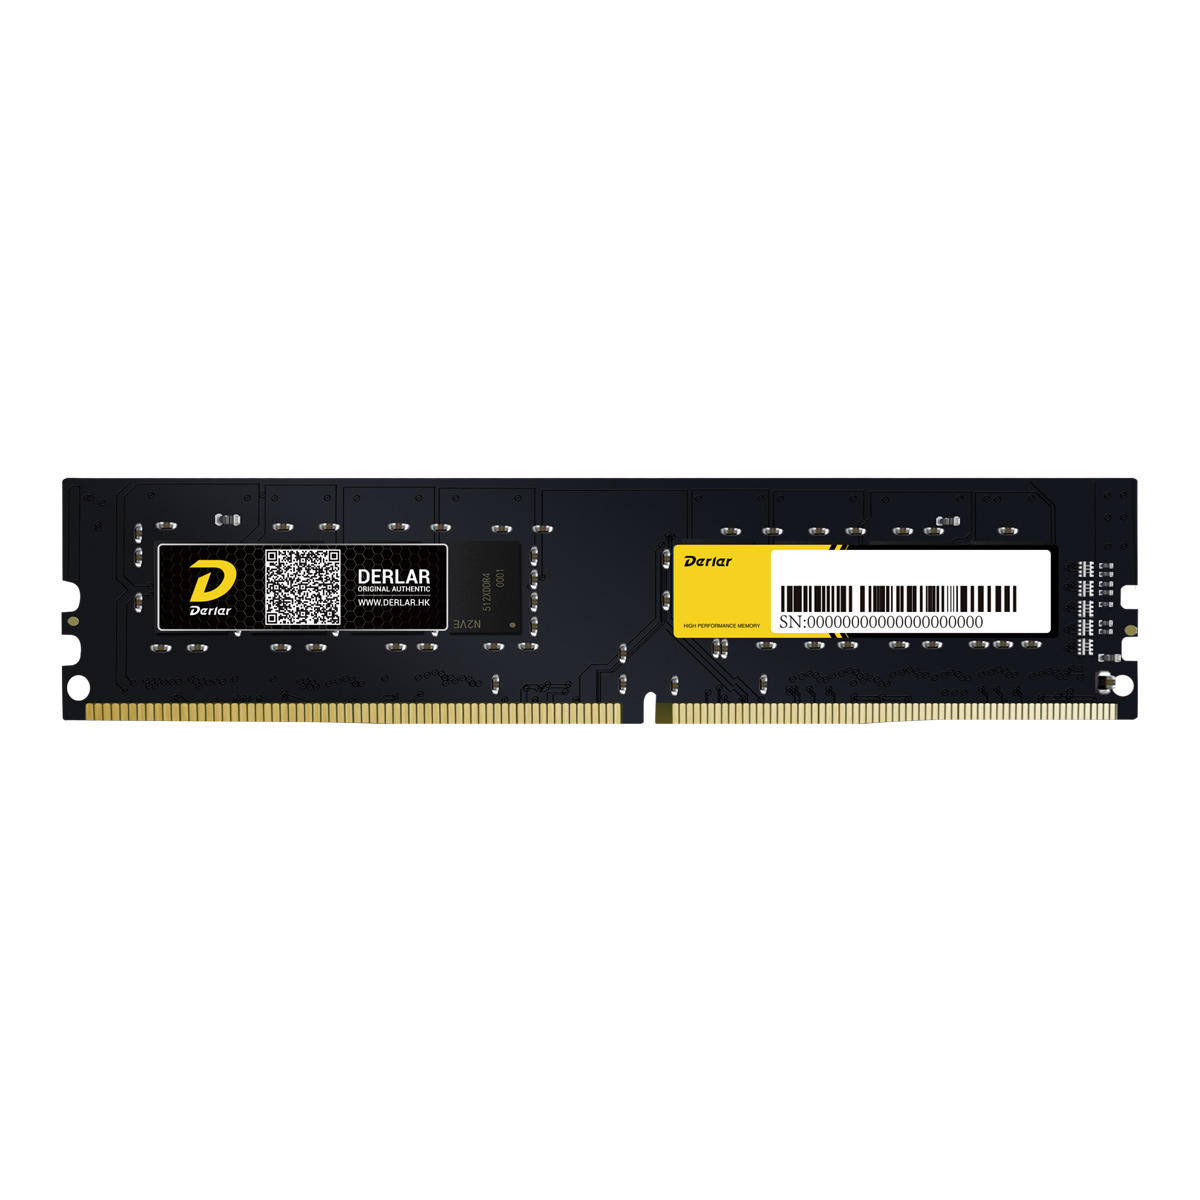 Память DDR4 DIMM 4Gb, 2400MHz, CL17, 1.2 В, Derlar, Black Warrior (4GB-2400-BW) б/у, отказ от покупки, вскрыта упаковка